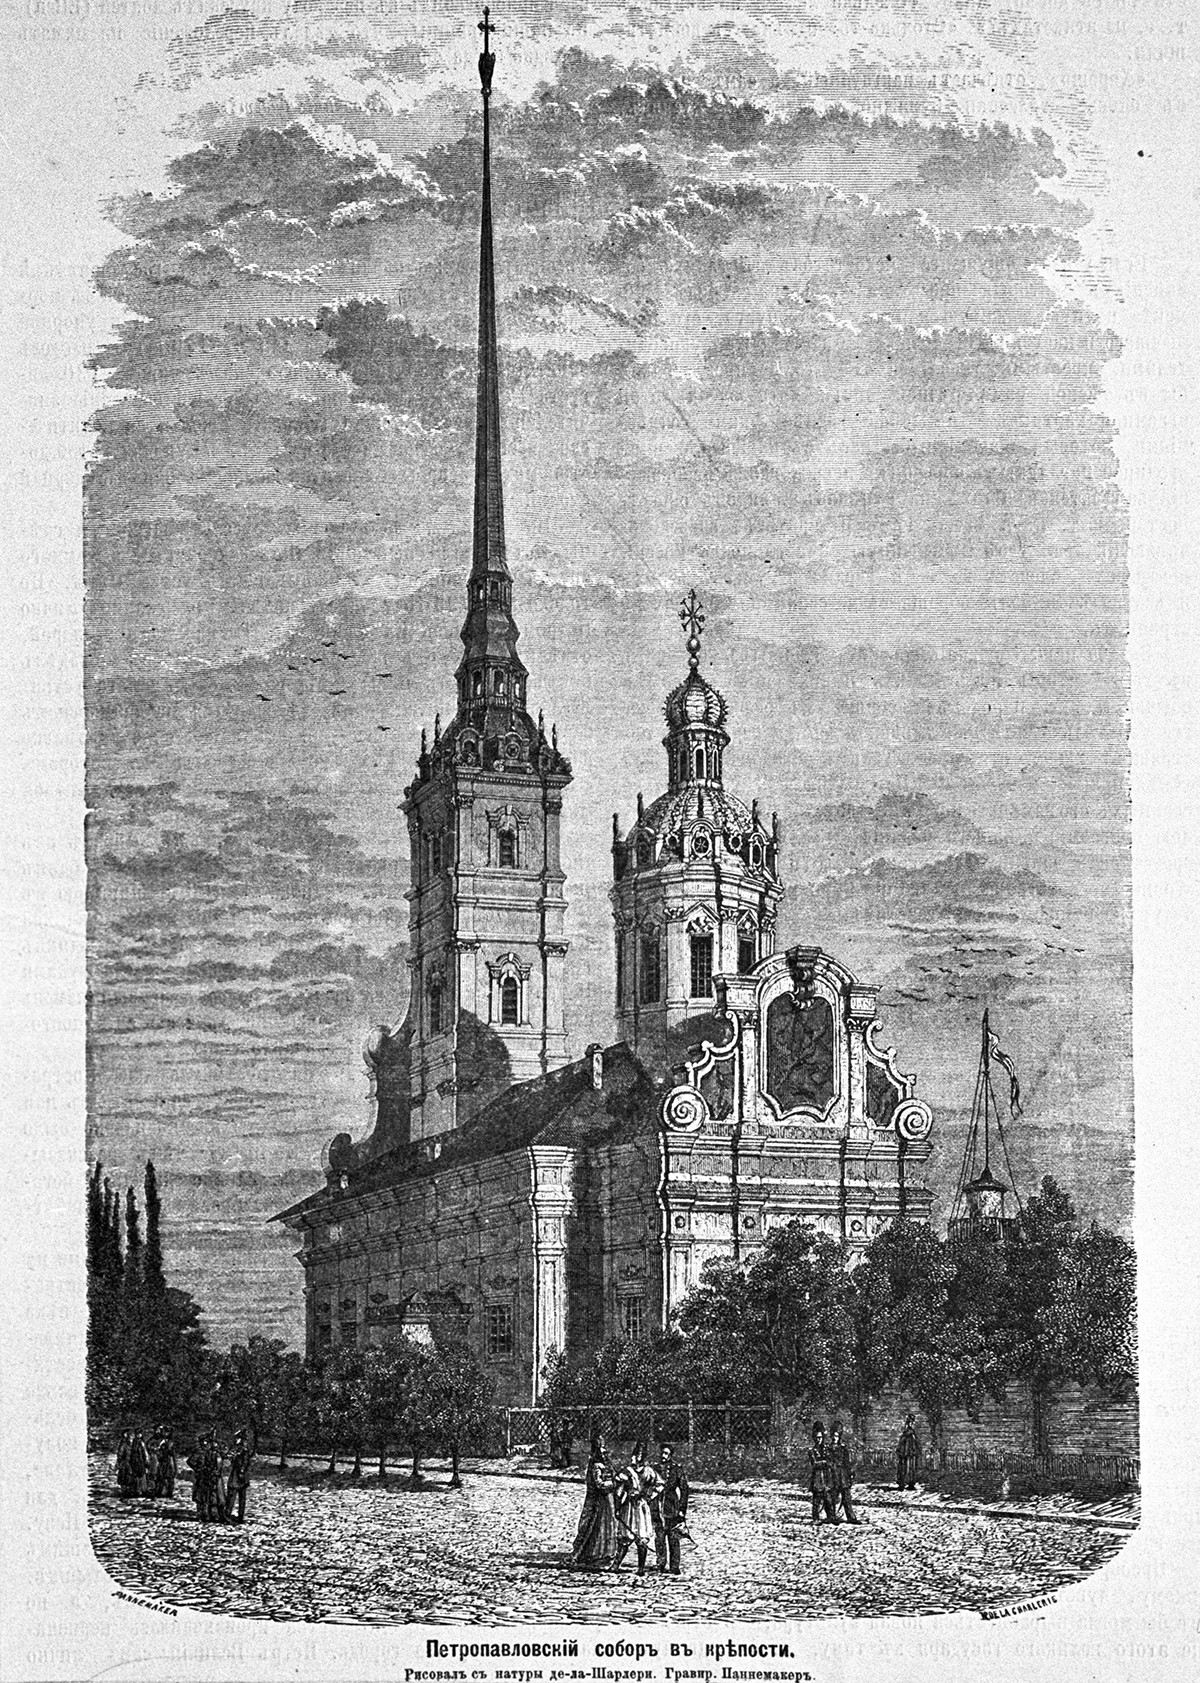 Репродукција на гравура од XIX век „Петропавловскиот храм во Петербург“. Историски музеј во Москва.

